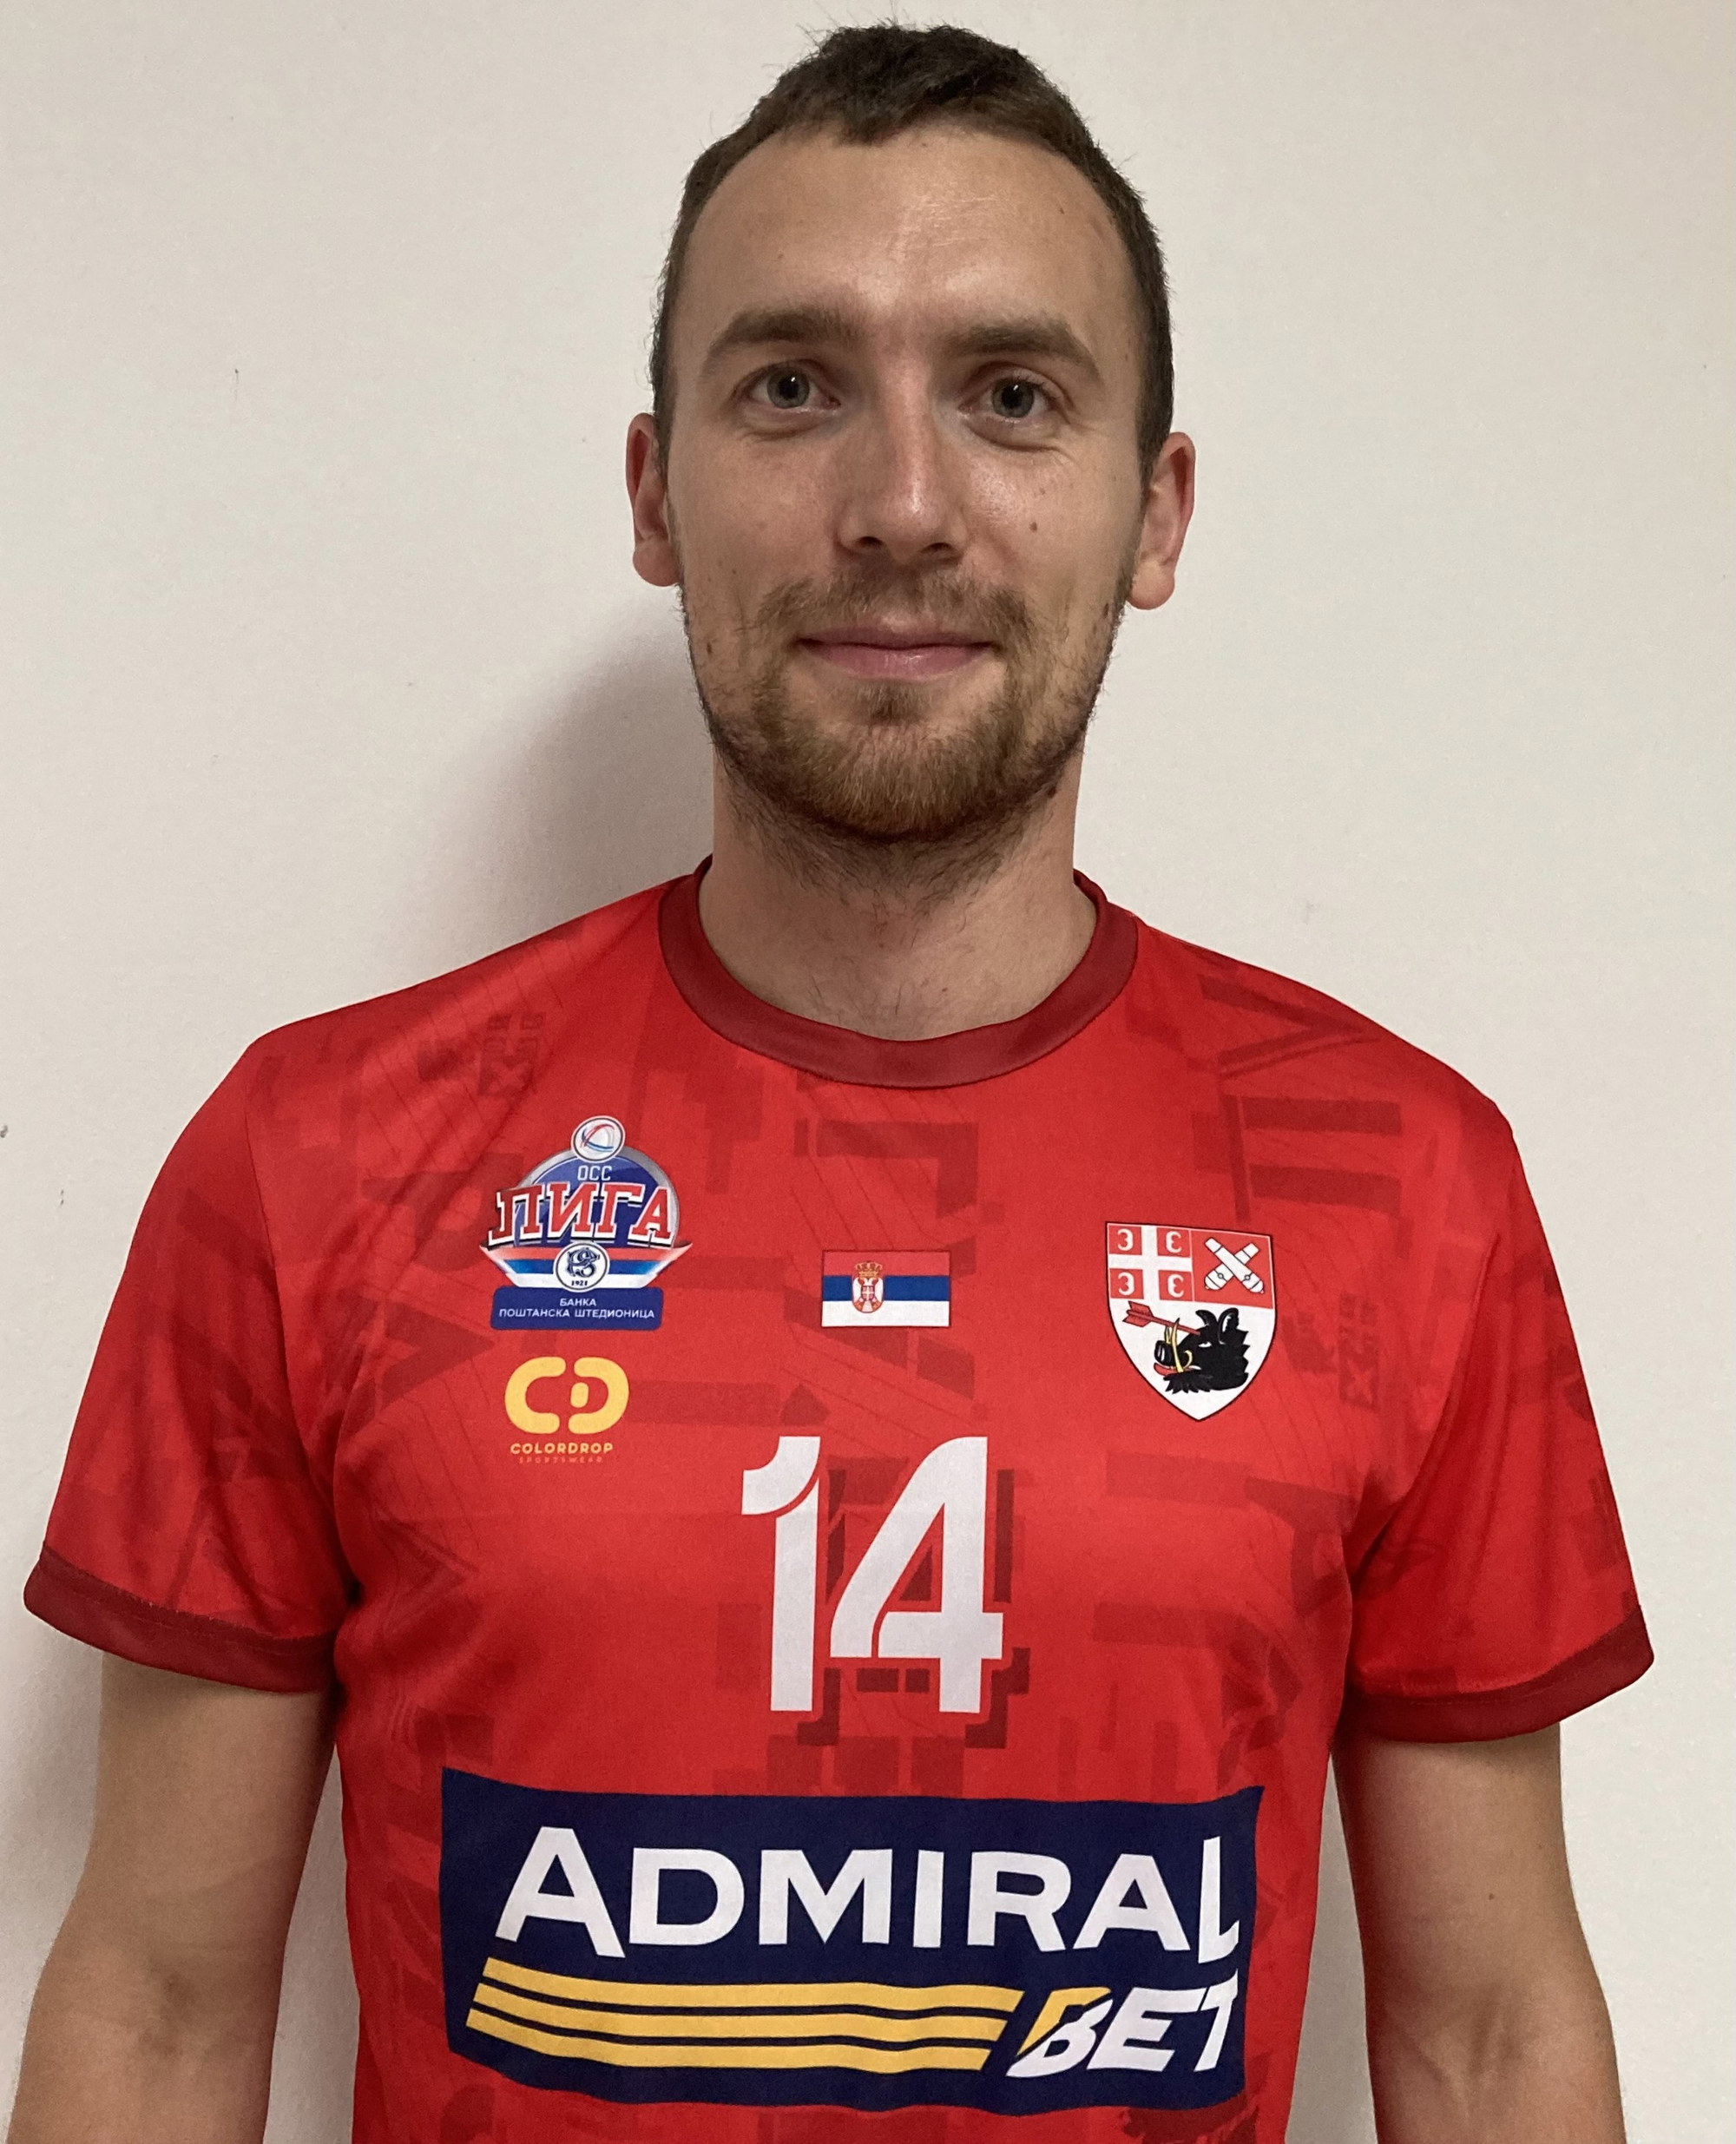 FK Radnicki Koceljeva - Club profile